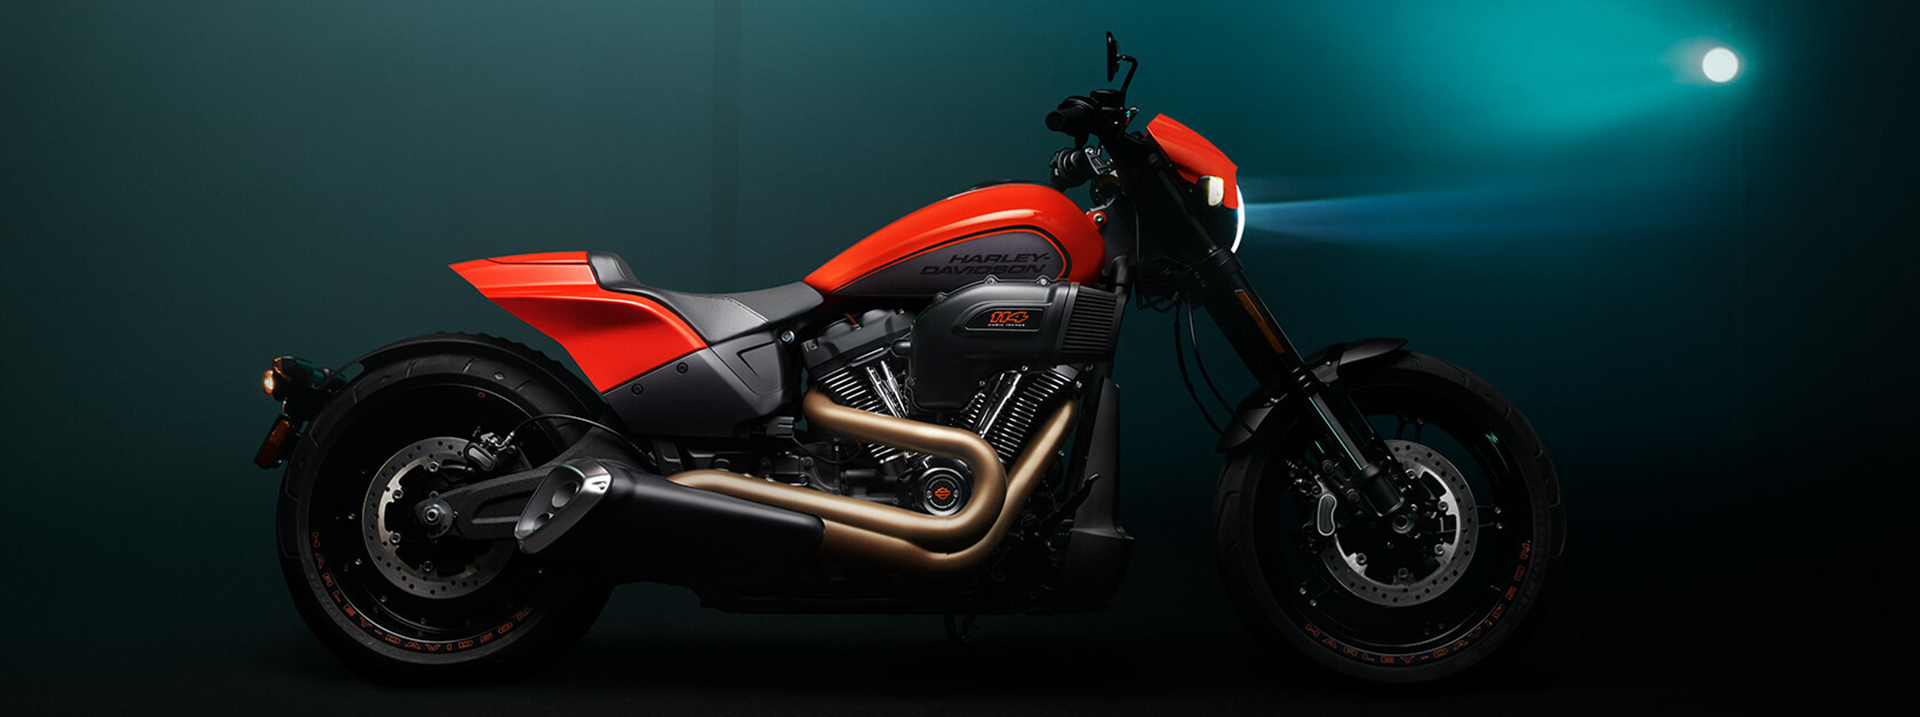 Những mẫu mô tô Harley Davidson 'tuyệt vời nhất' mọi thời đại 10